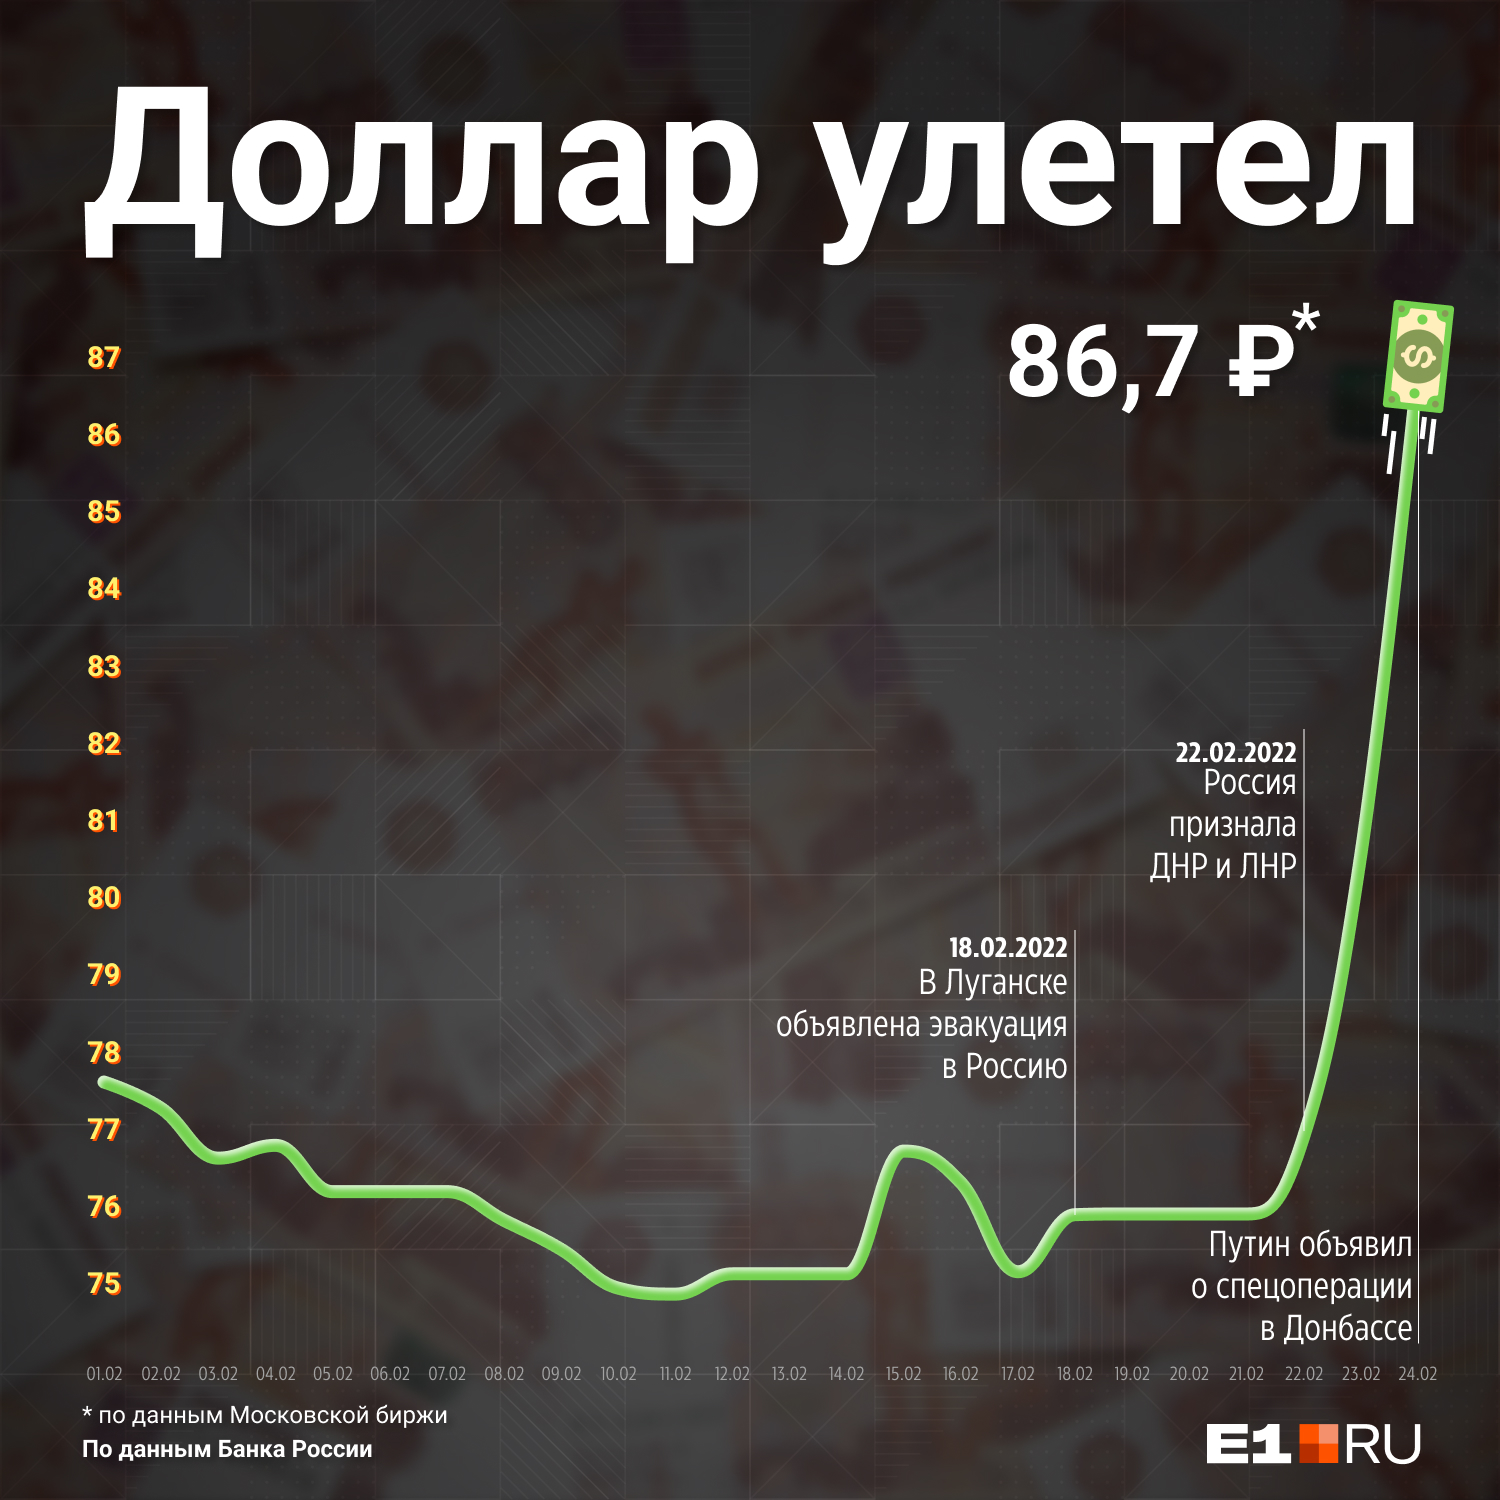 Мы проследили, <a href="https://www.e1.ru/text/economics/2022/02/24/70466495/" class="_" target="_blank">как менялся курс</a> валюты после заявлений России